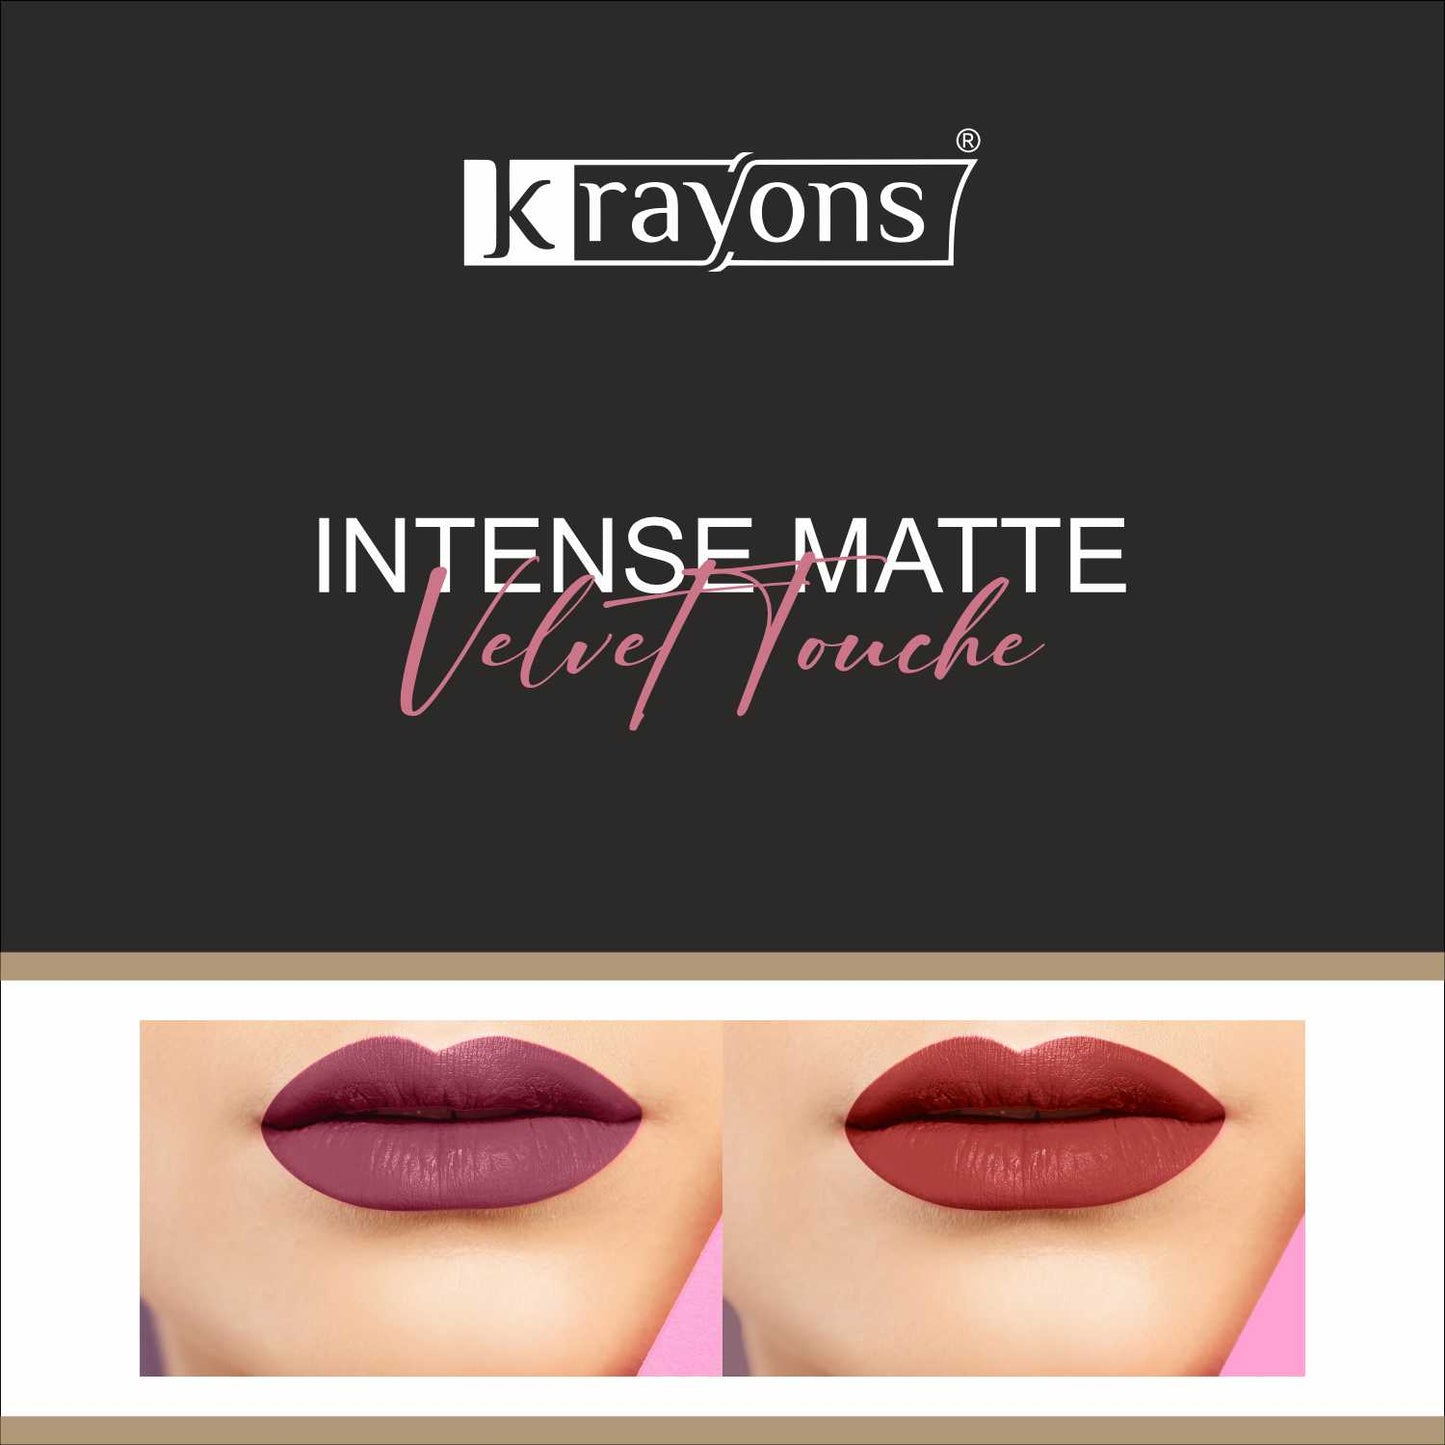 Krayons Intense Matte Lipstick, Waterproof, Longlasting, Rose Red, Scarlet Red, 3.5gm Each (Pack of 2)